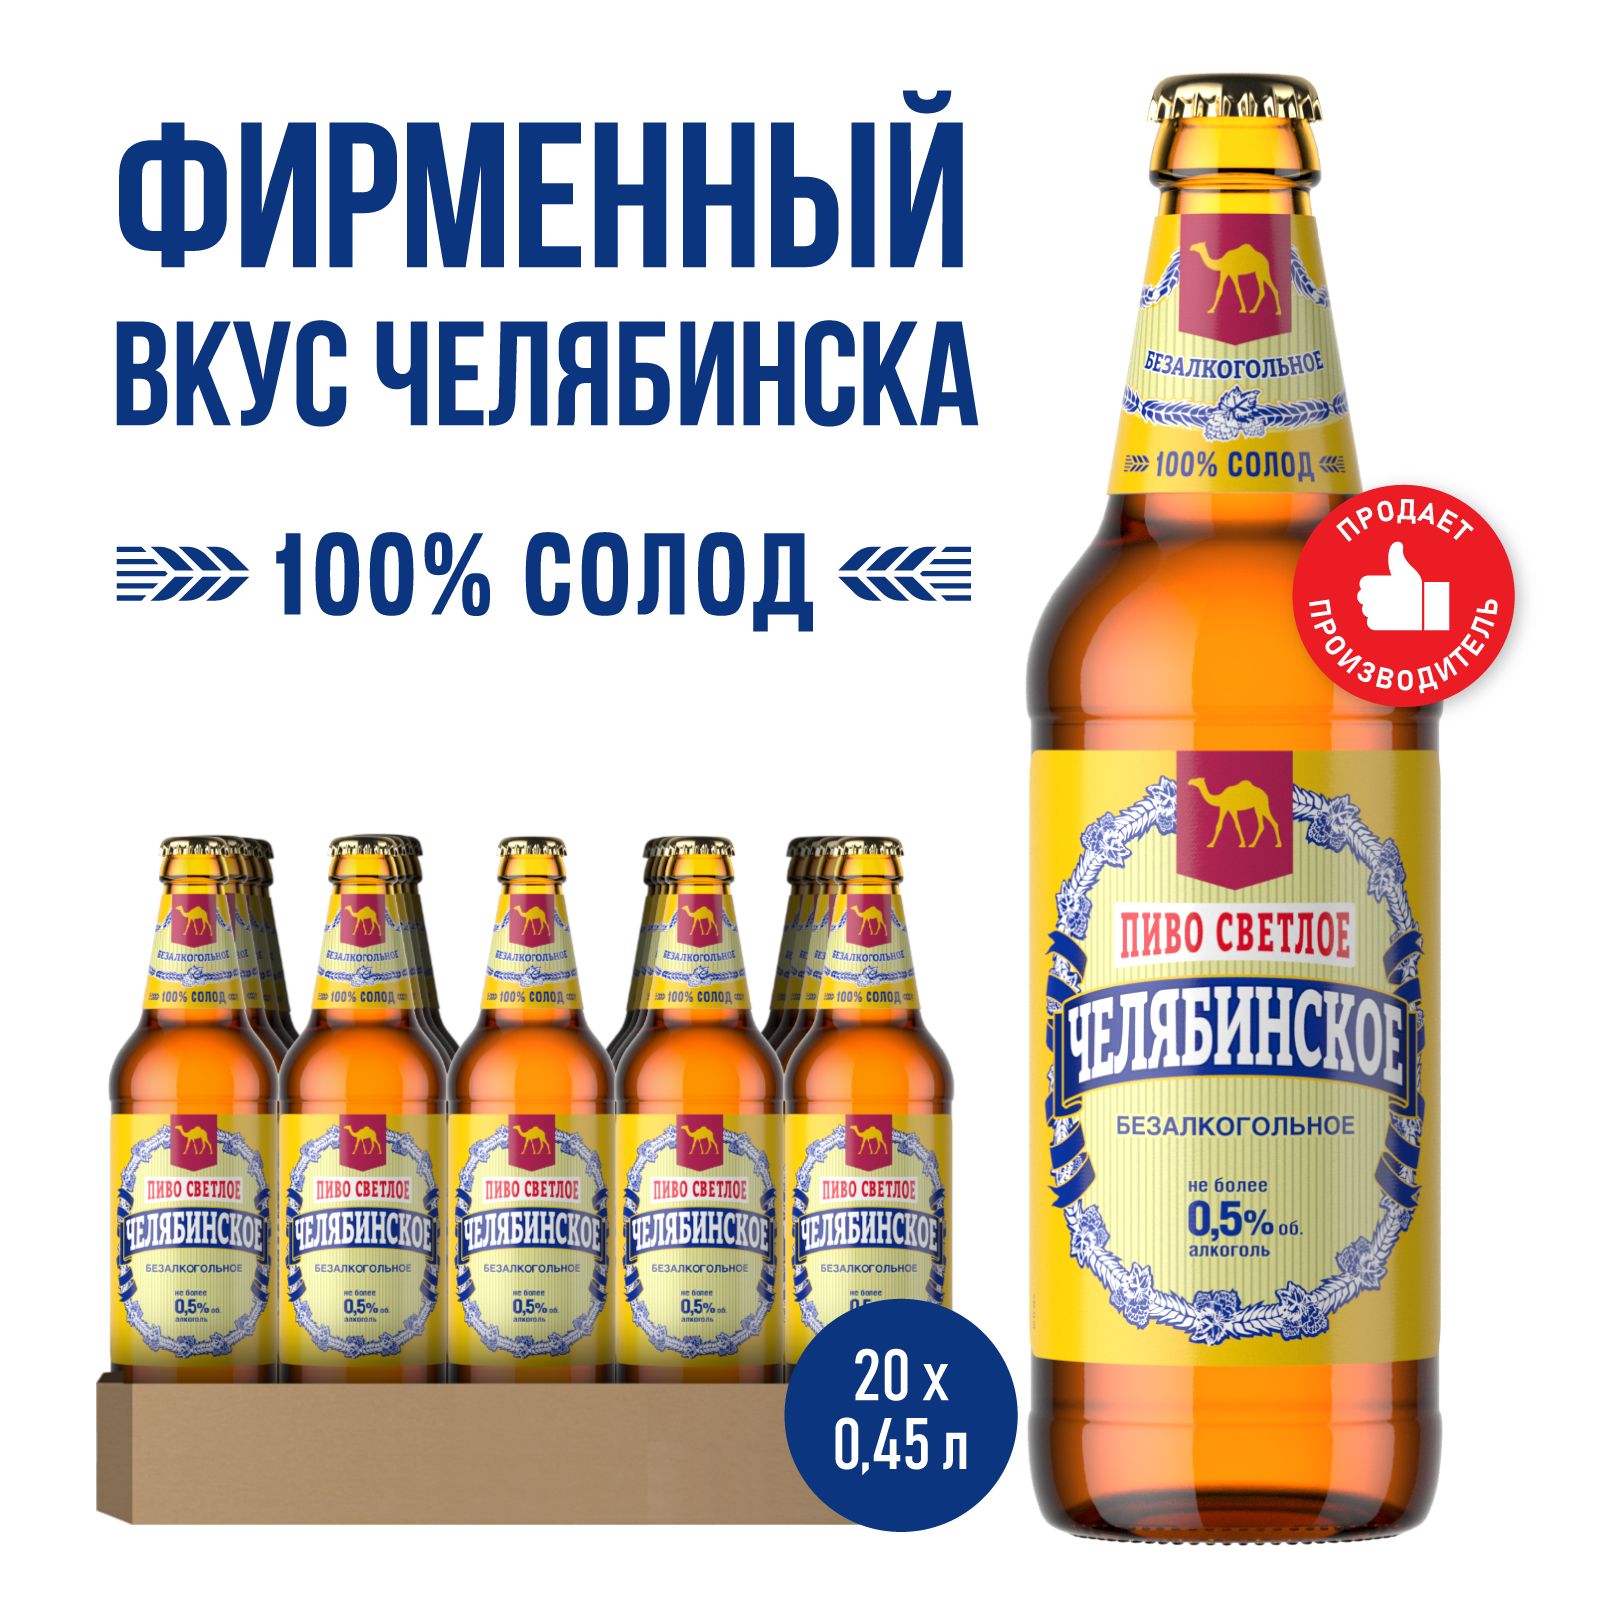 ПивоЧелябинскоеБезалкогольноеСветлое,20шт.х0,45л,бутылка